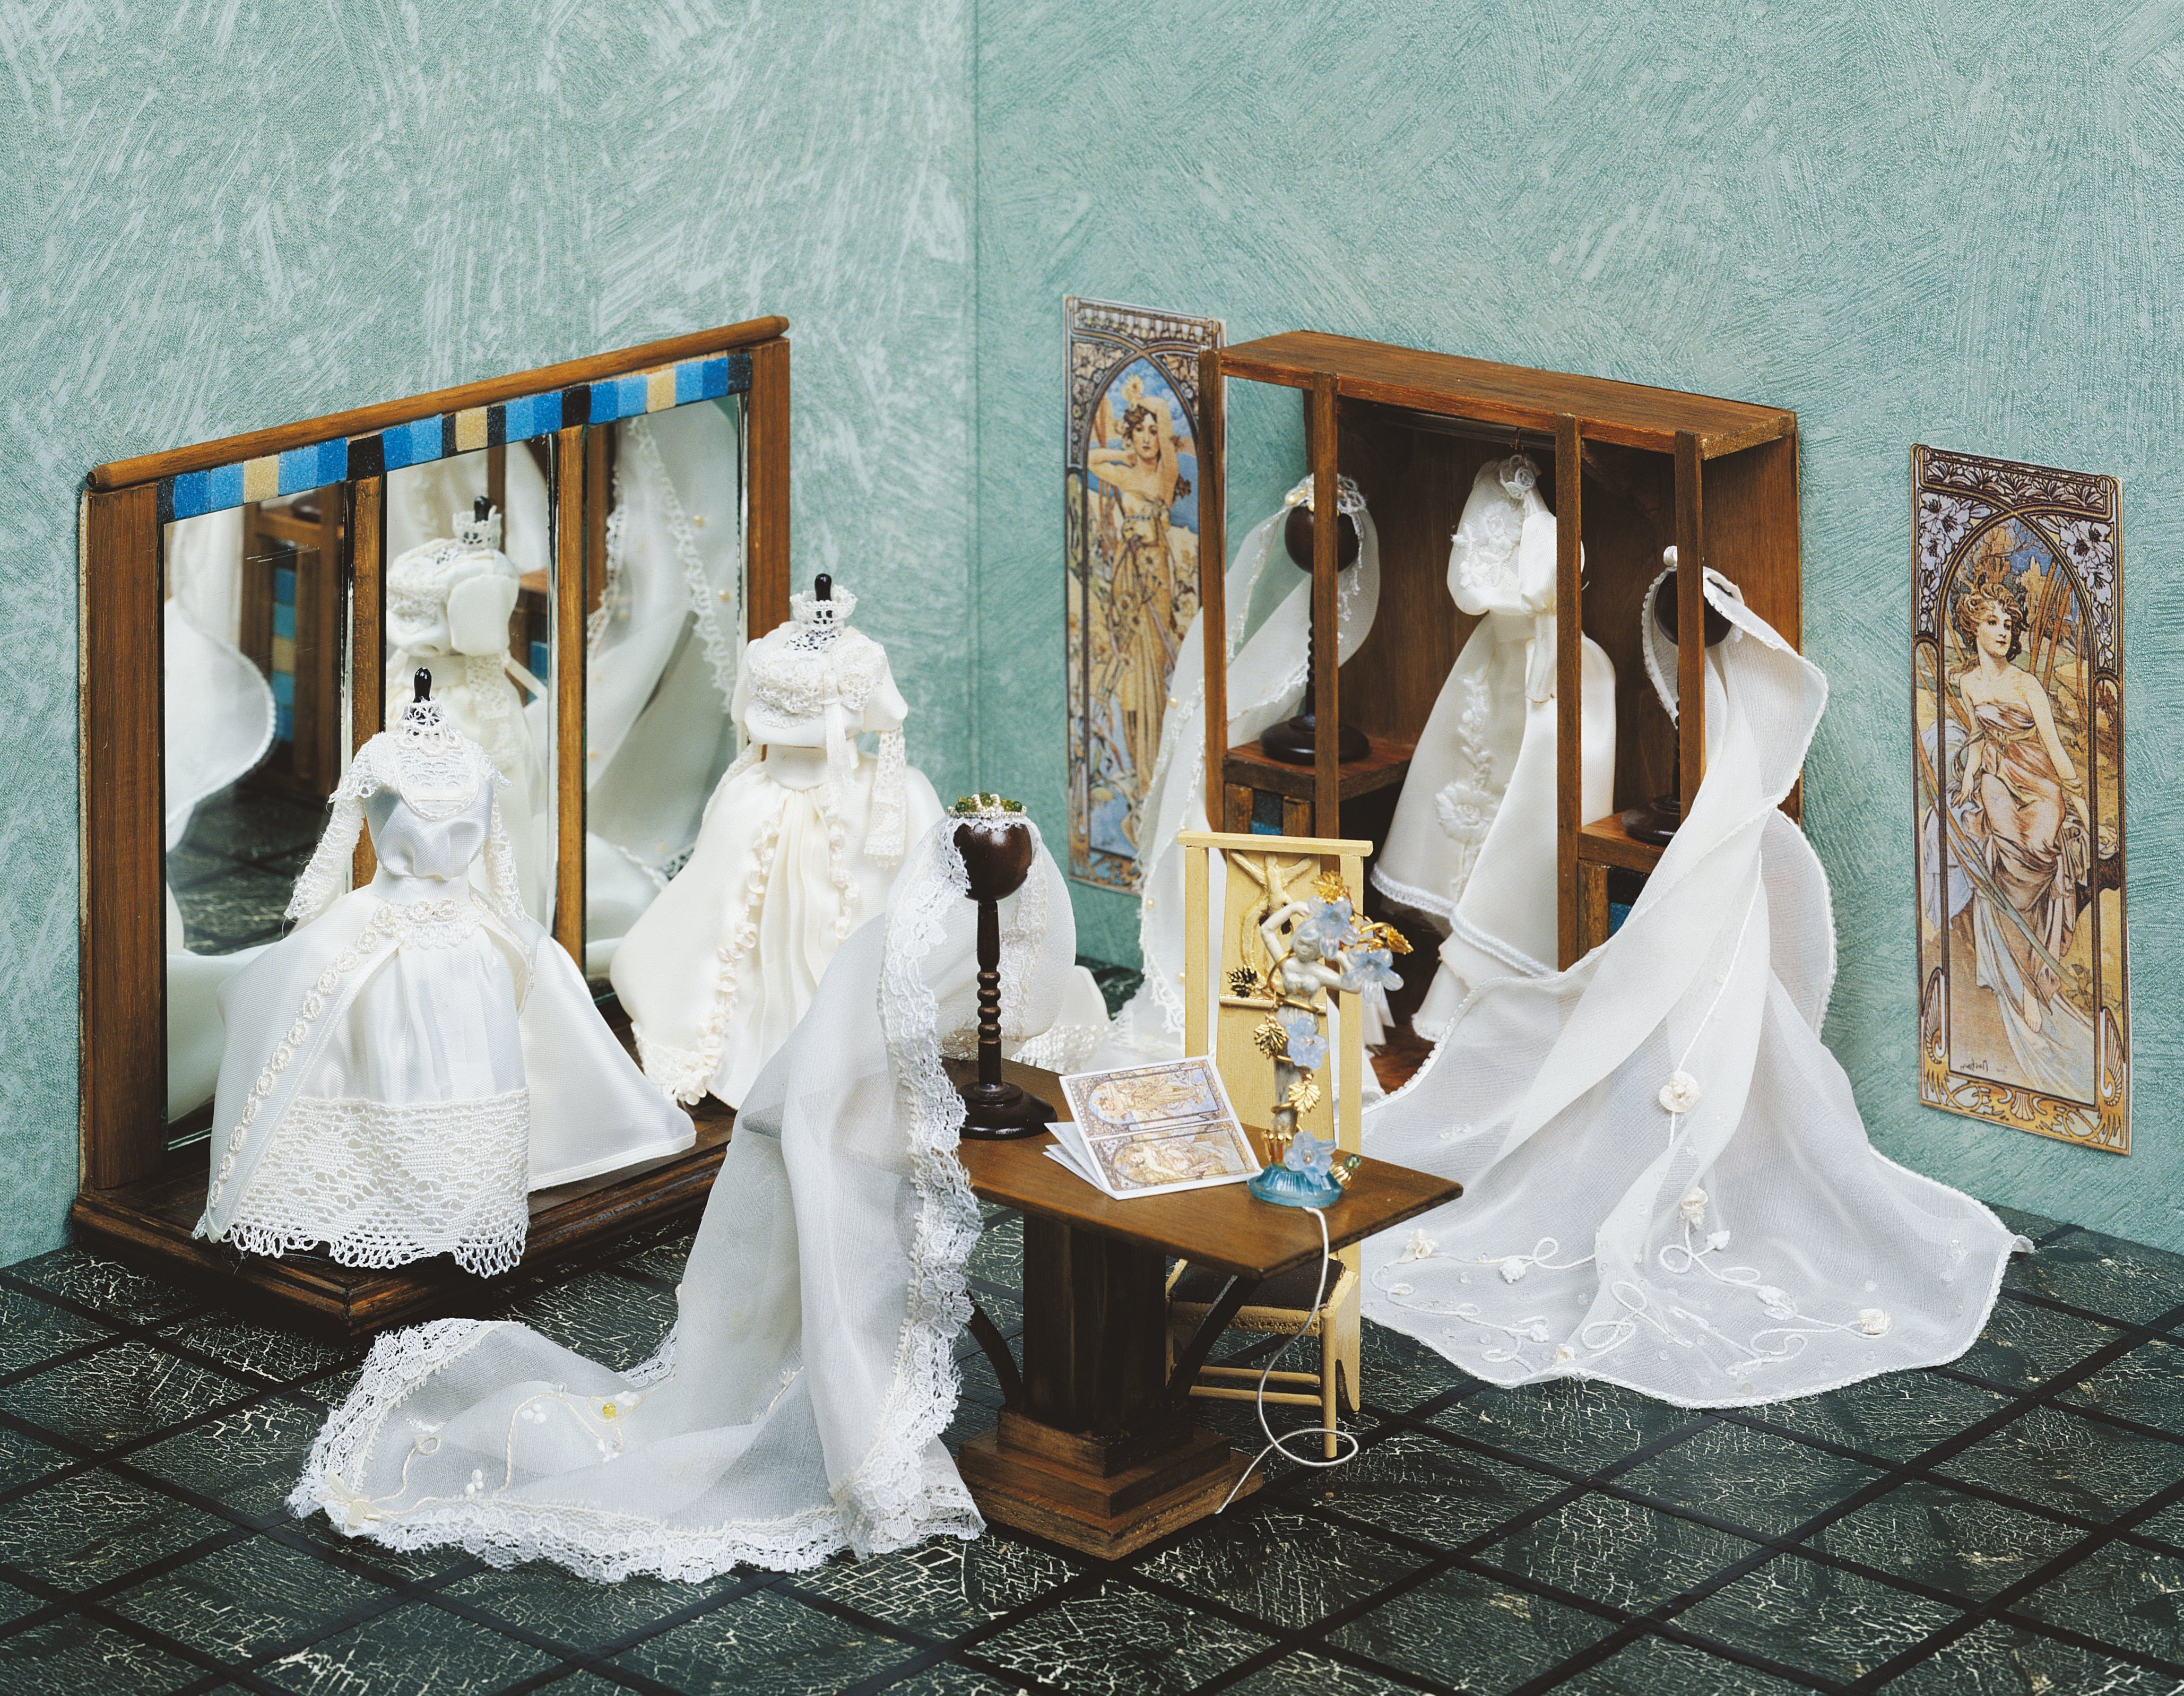 Bridal boutique shop | Source: Getty Images.